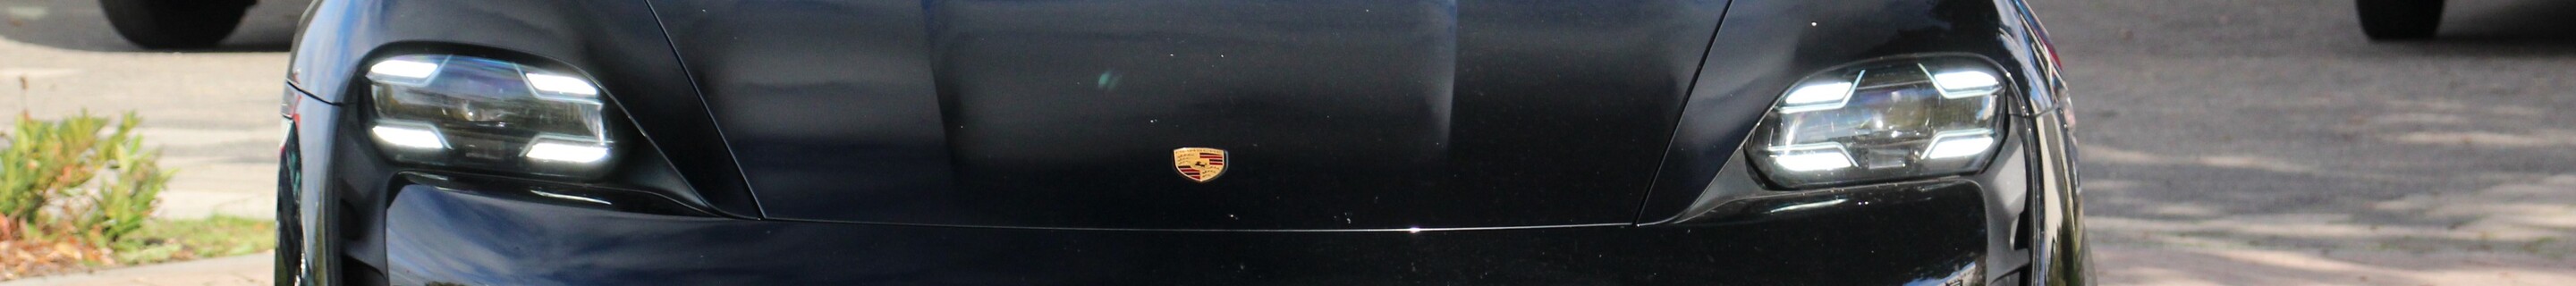 Porsche Taycan Turbo